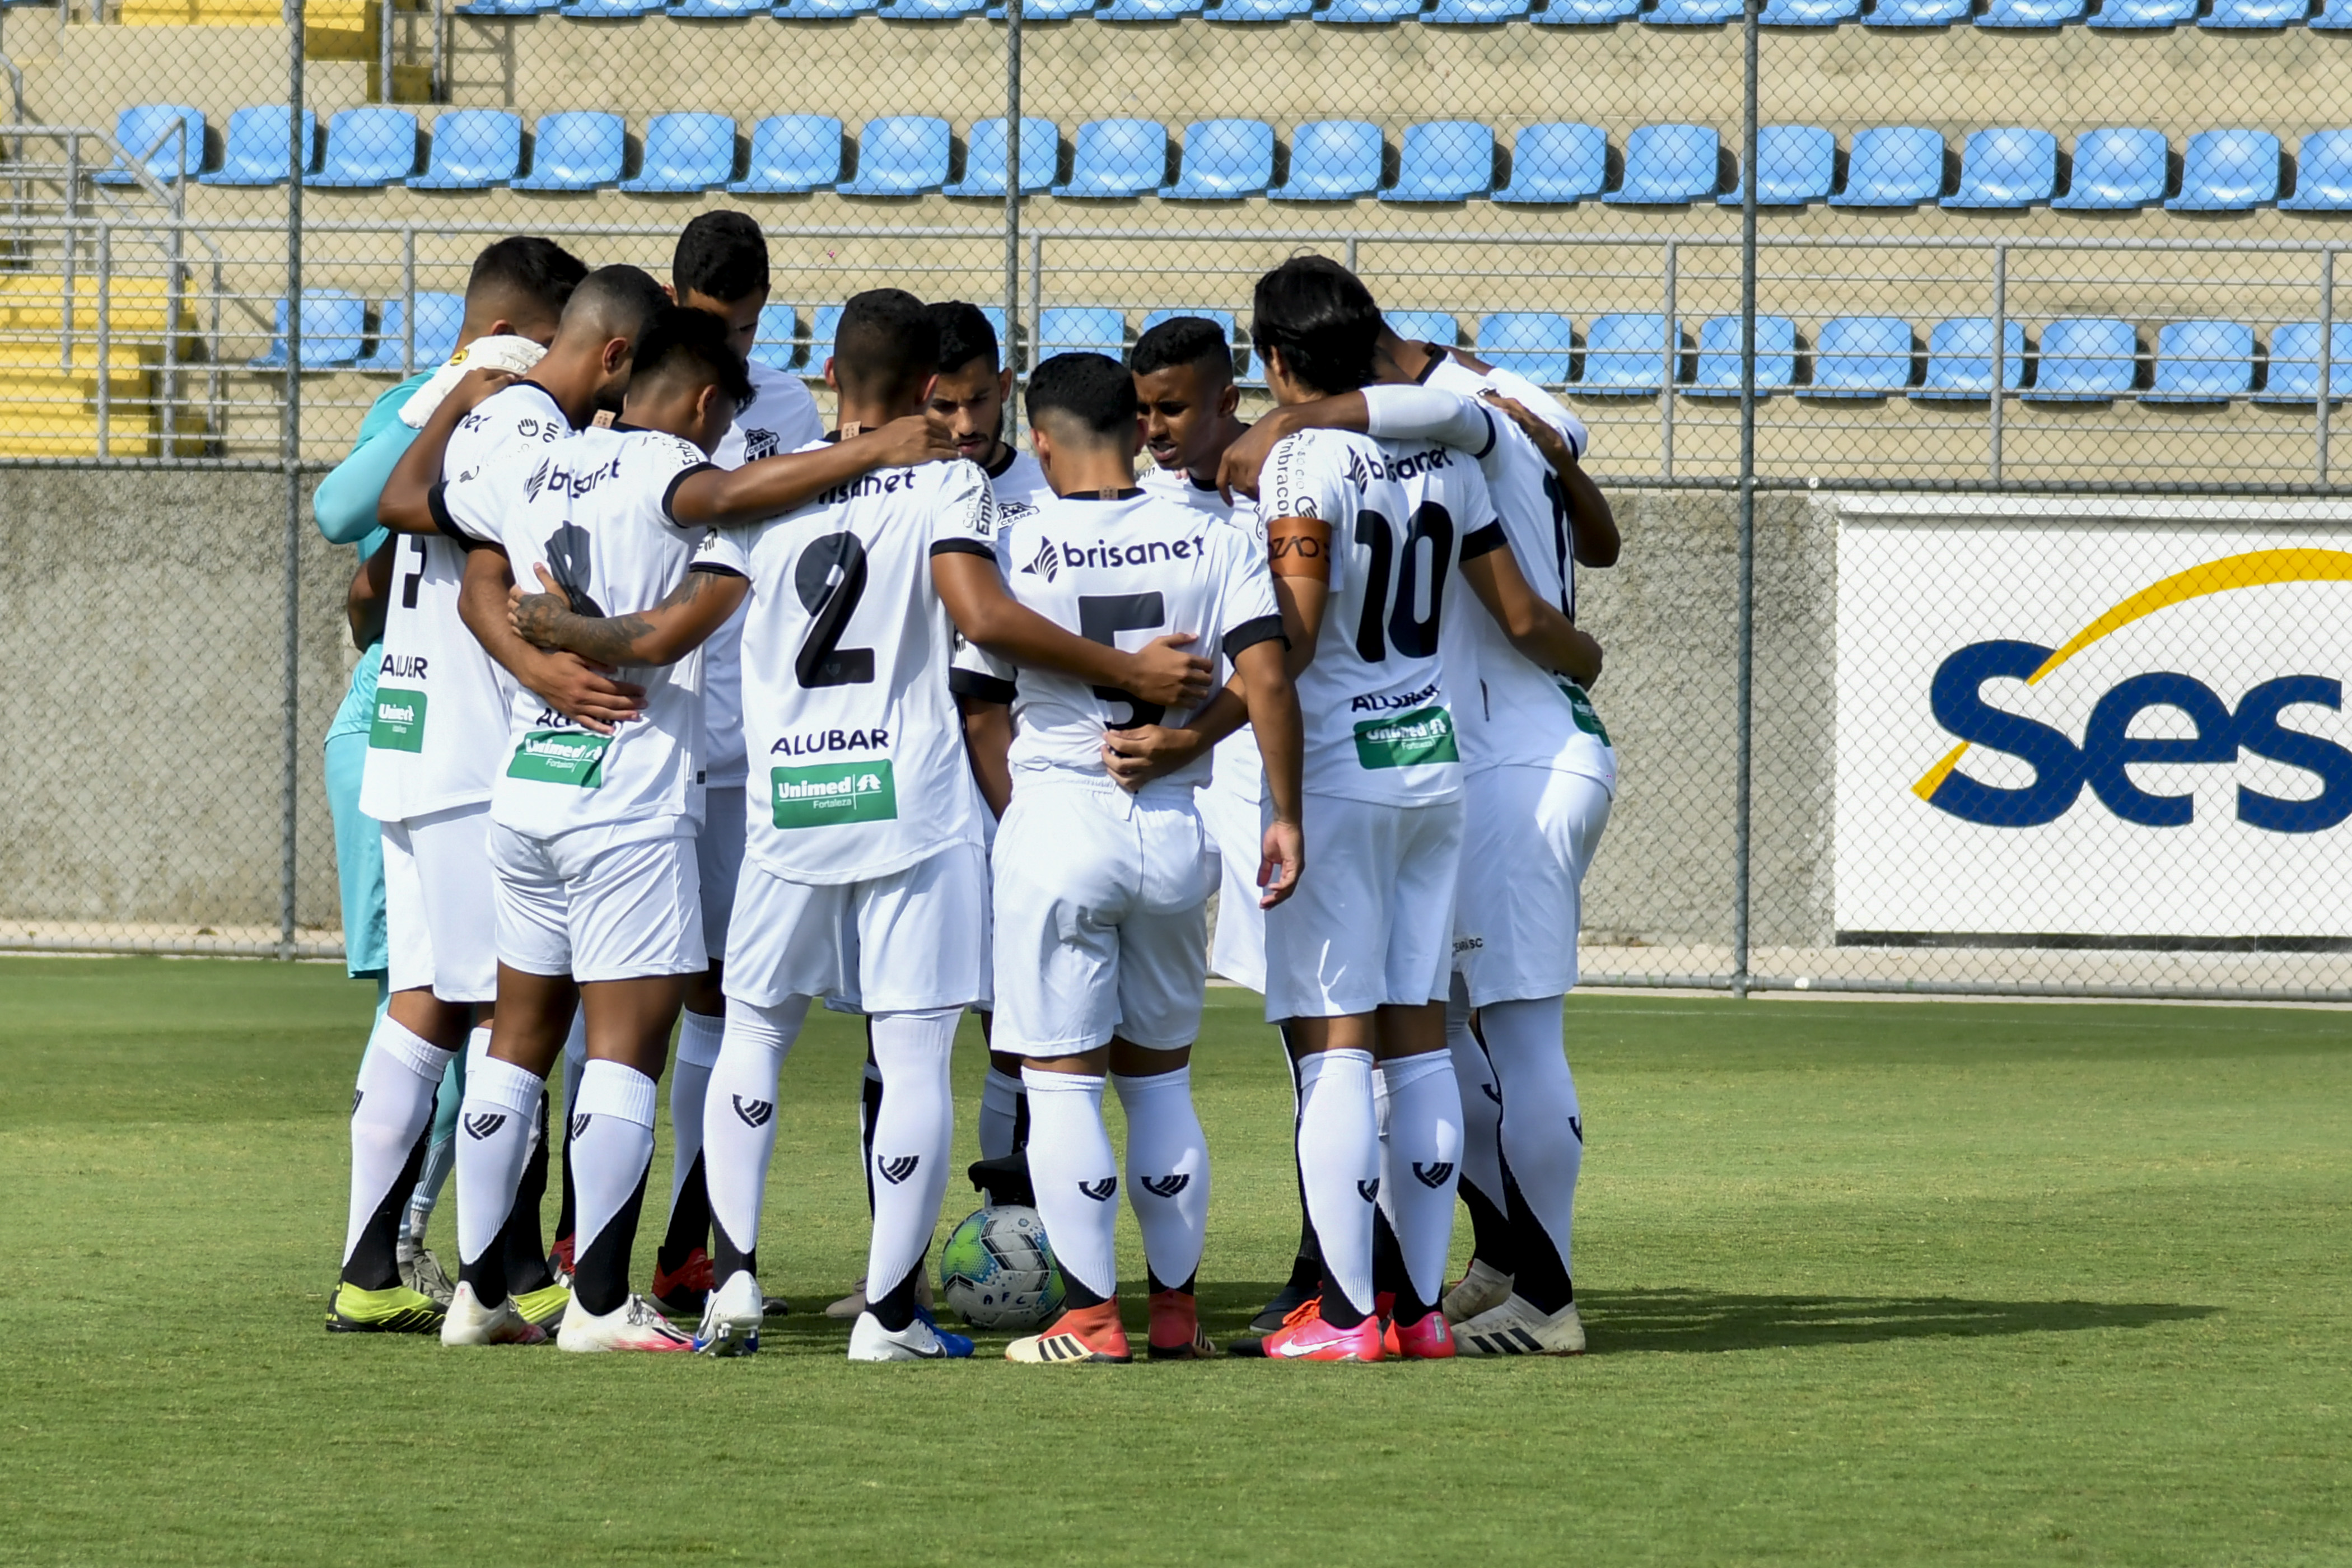 Sub-20: De olho na primeira vitória no Campeonato Brasileiro, Ceará encara a Chapecoense